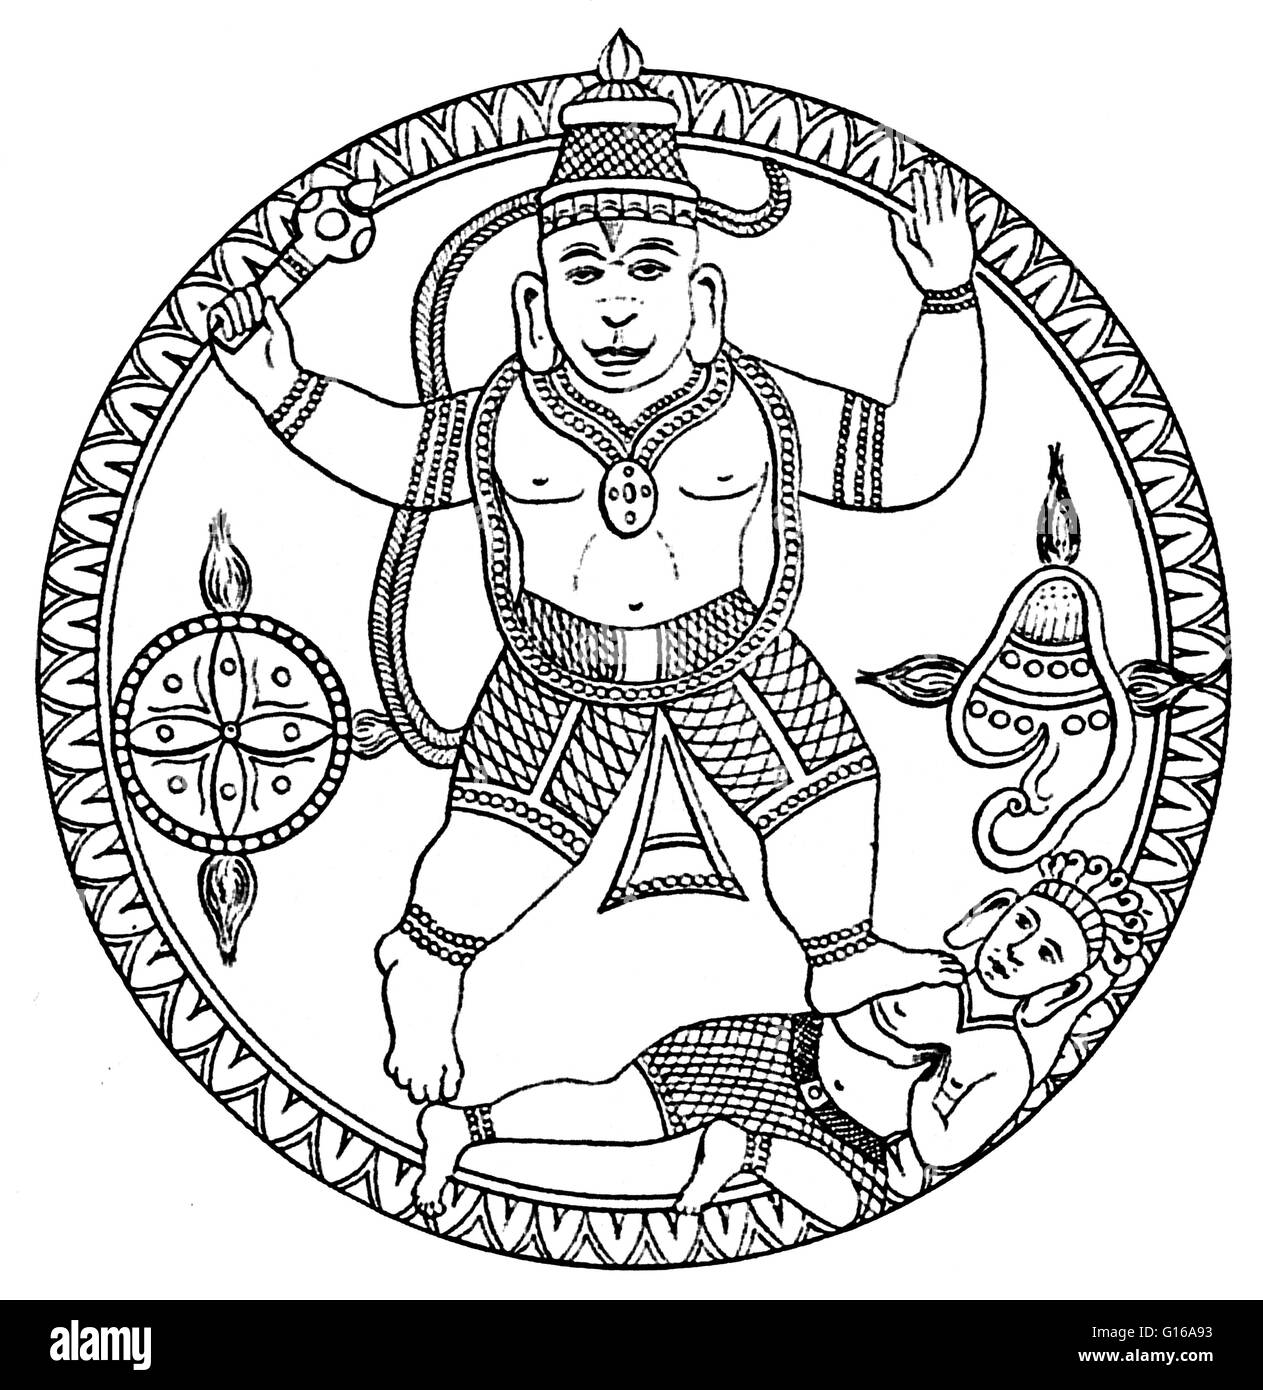 Hanuman, insieme con Ganesha e Garuda, è una delle tre principali divinità di origine animale nella mitologia indù che si è evoluto dopo il periodo vedico nella storia indiana. Egli è amato in tutta l India come la scimmia-dio che così fedelmente servì Rama, Vishnu's Foto Stock